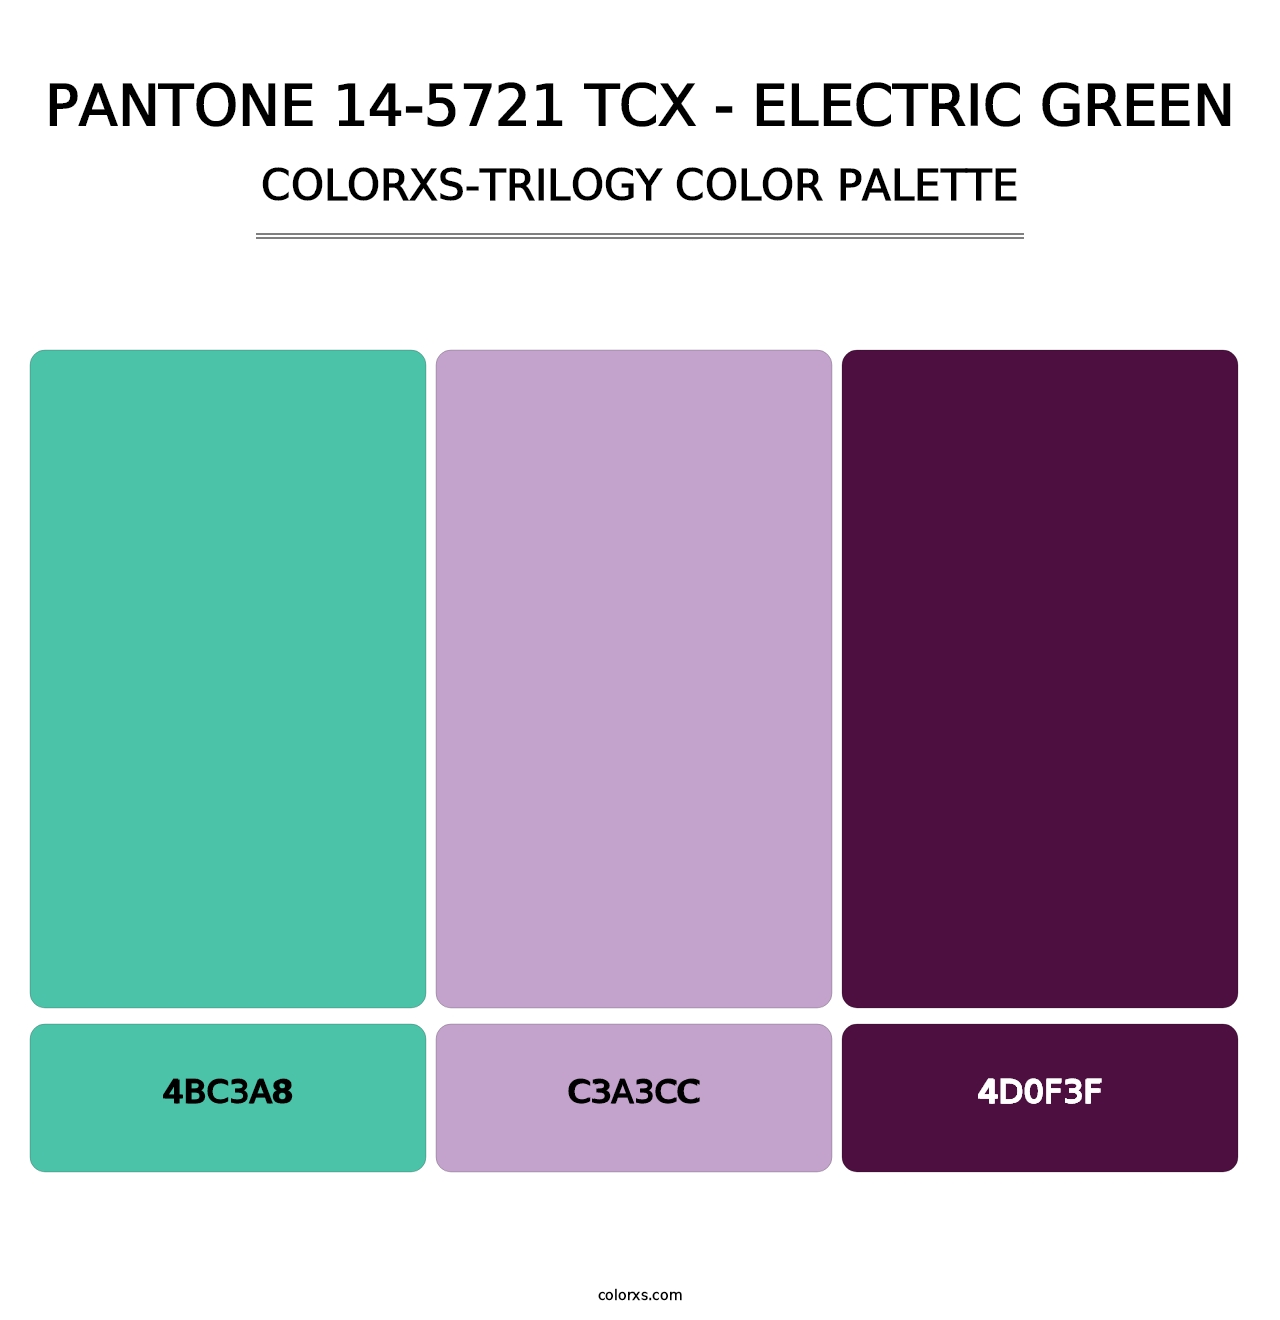 PANTONE 14-5721 TCX - Electric Green - Colorxs Trilogy Palette